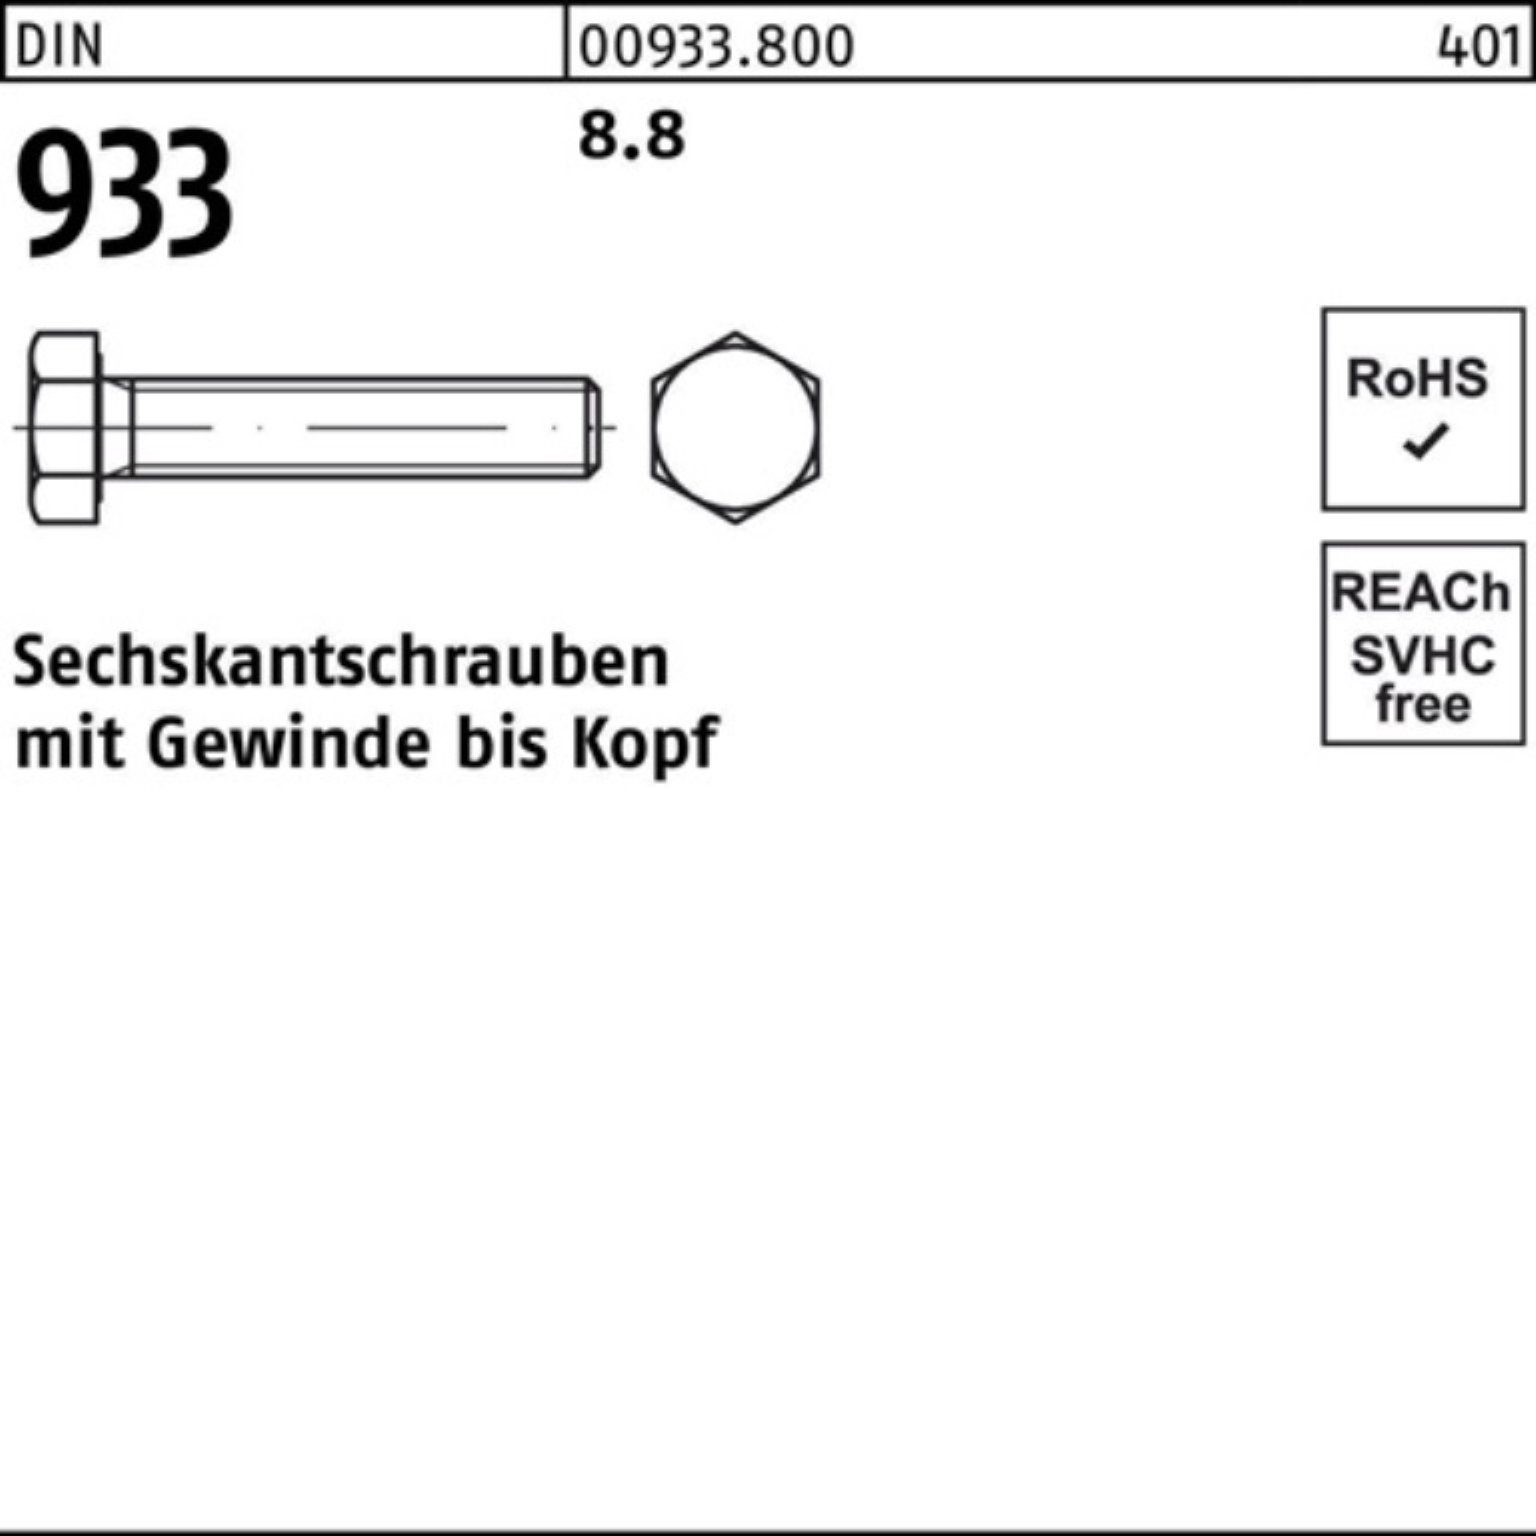 Reyher Sechskantschraube 100er 933 8.8 DIN 90 25 933 Sechskantschraube DIN Stück Pack VG M22x